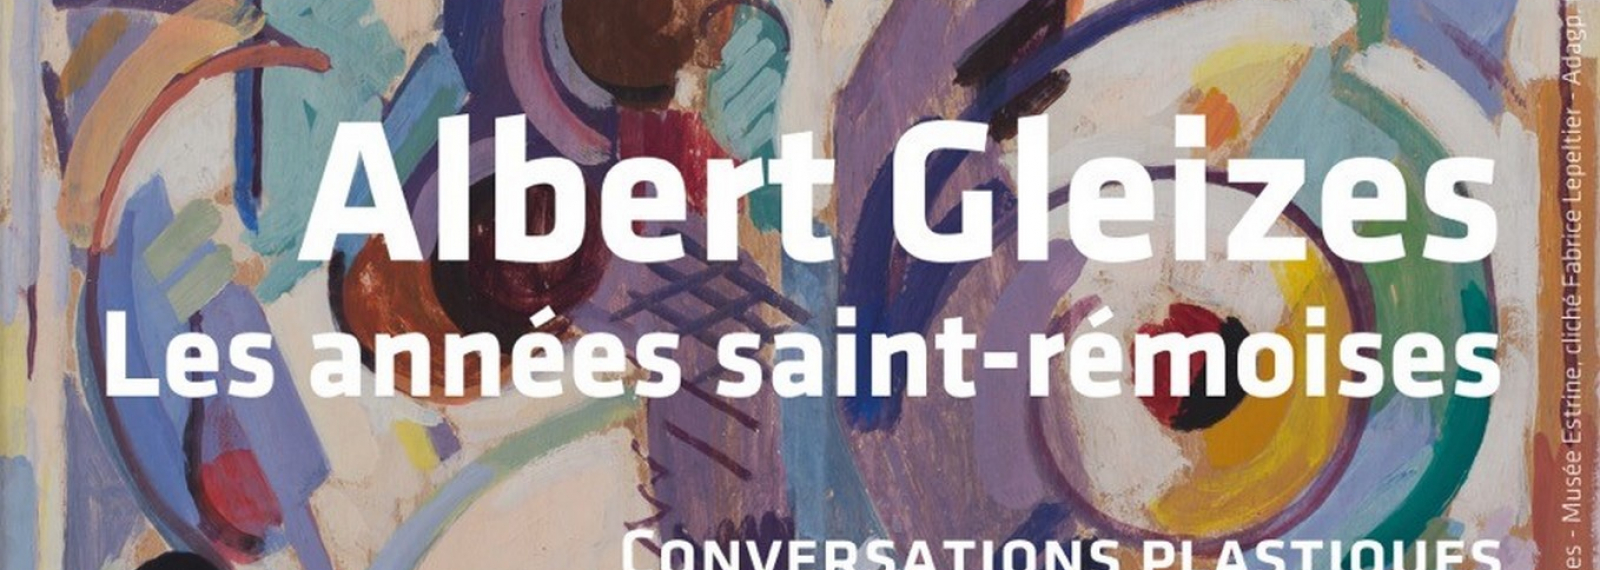 Exposition d'Albert Gleizes au Musée Estrine à Saint-Rémy-de-Provence